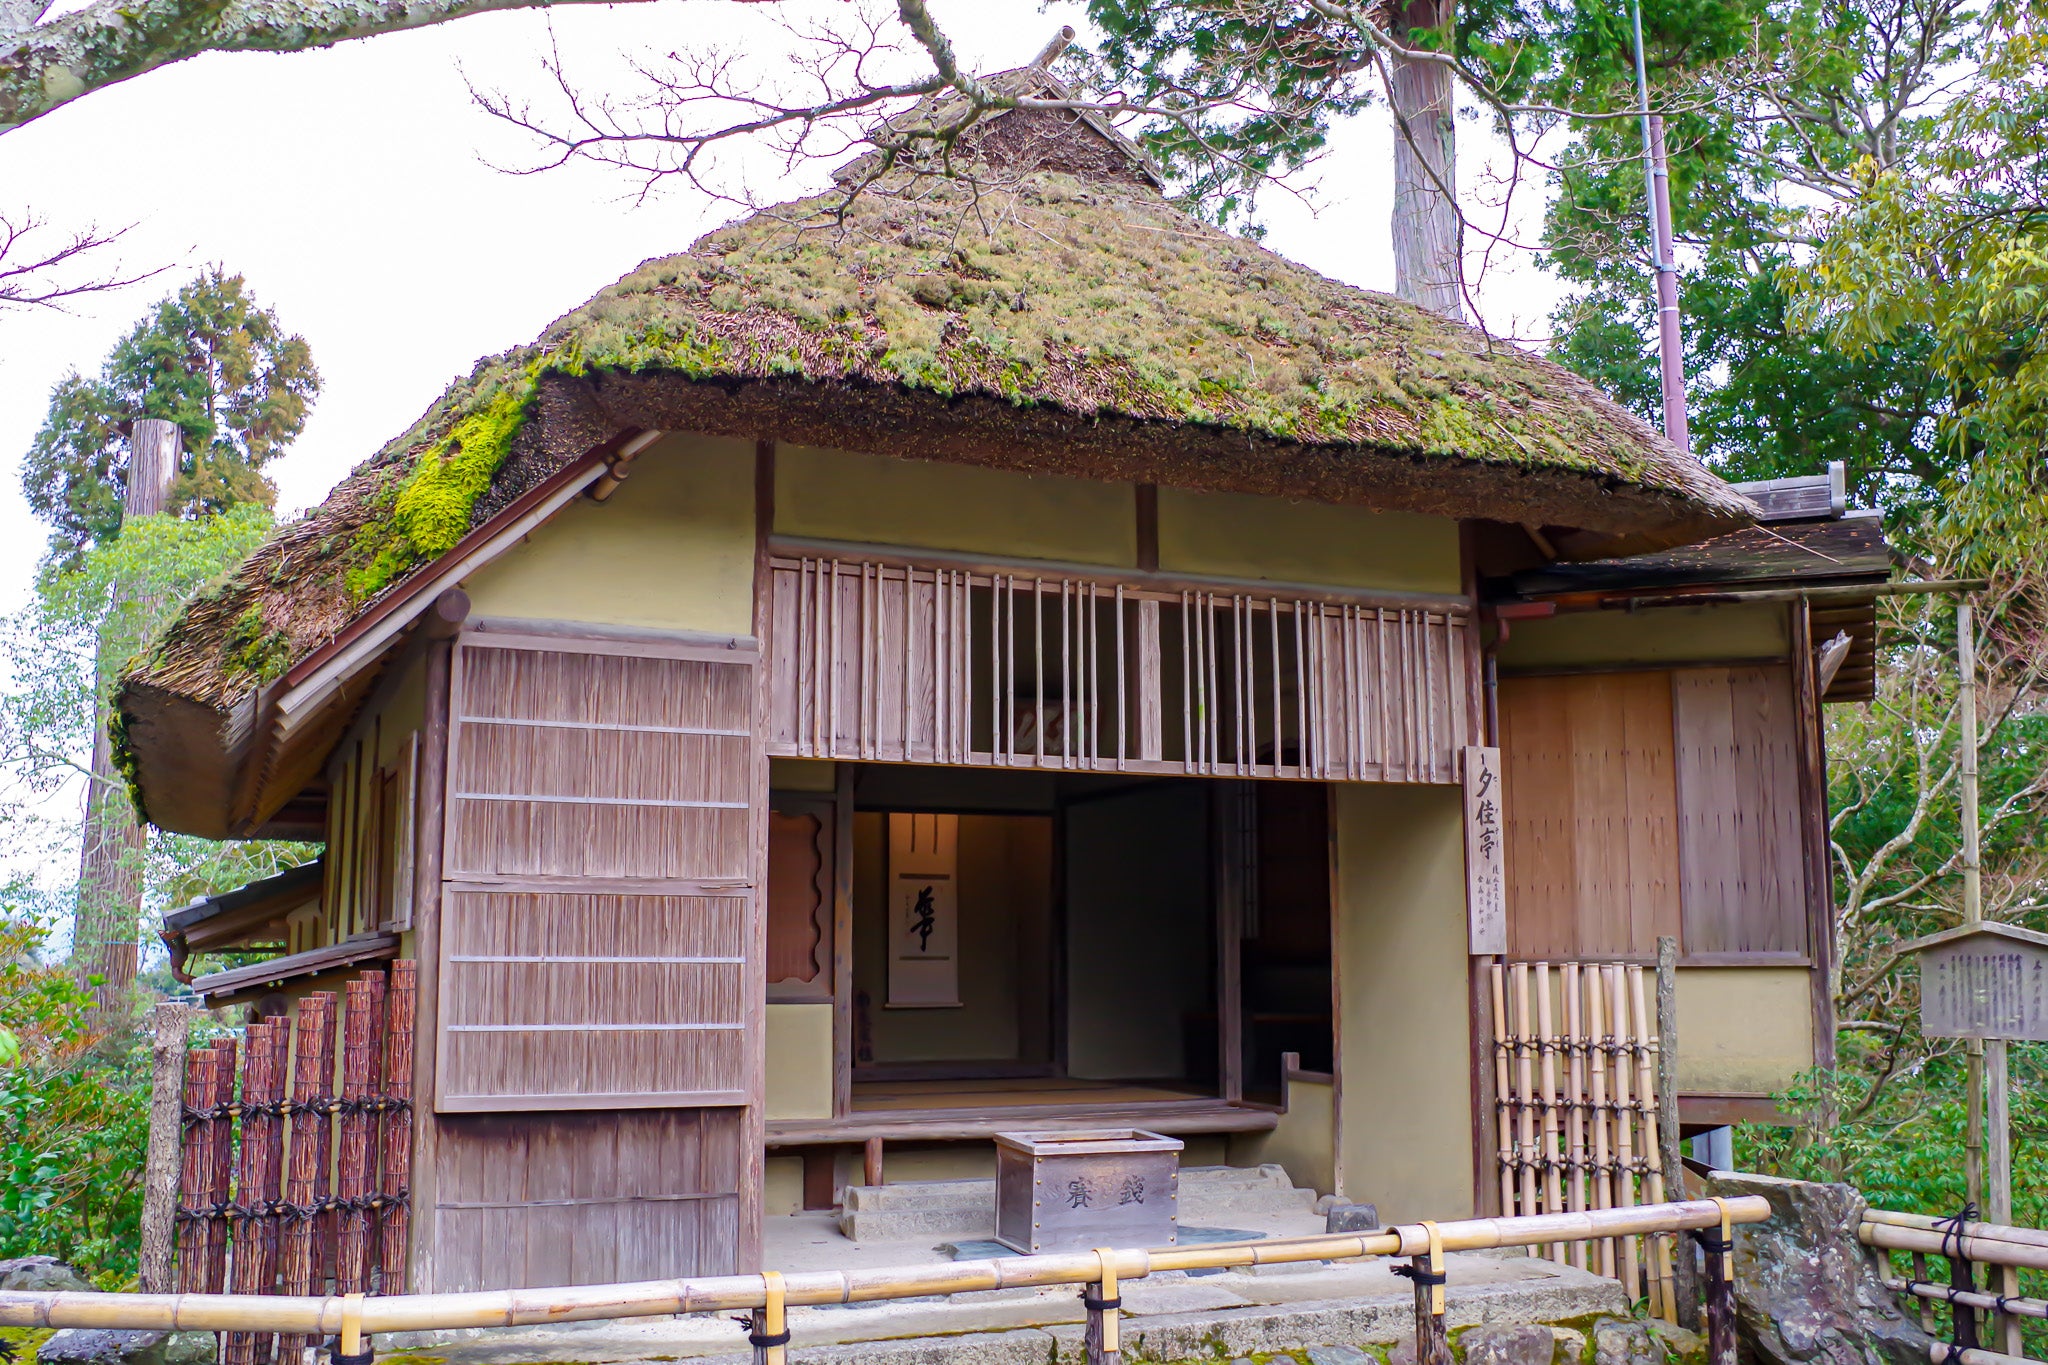 Ancient Japanese tea room